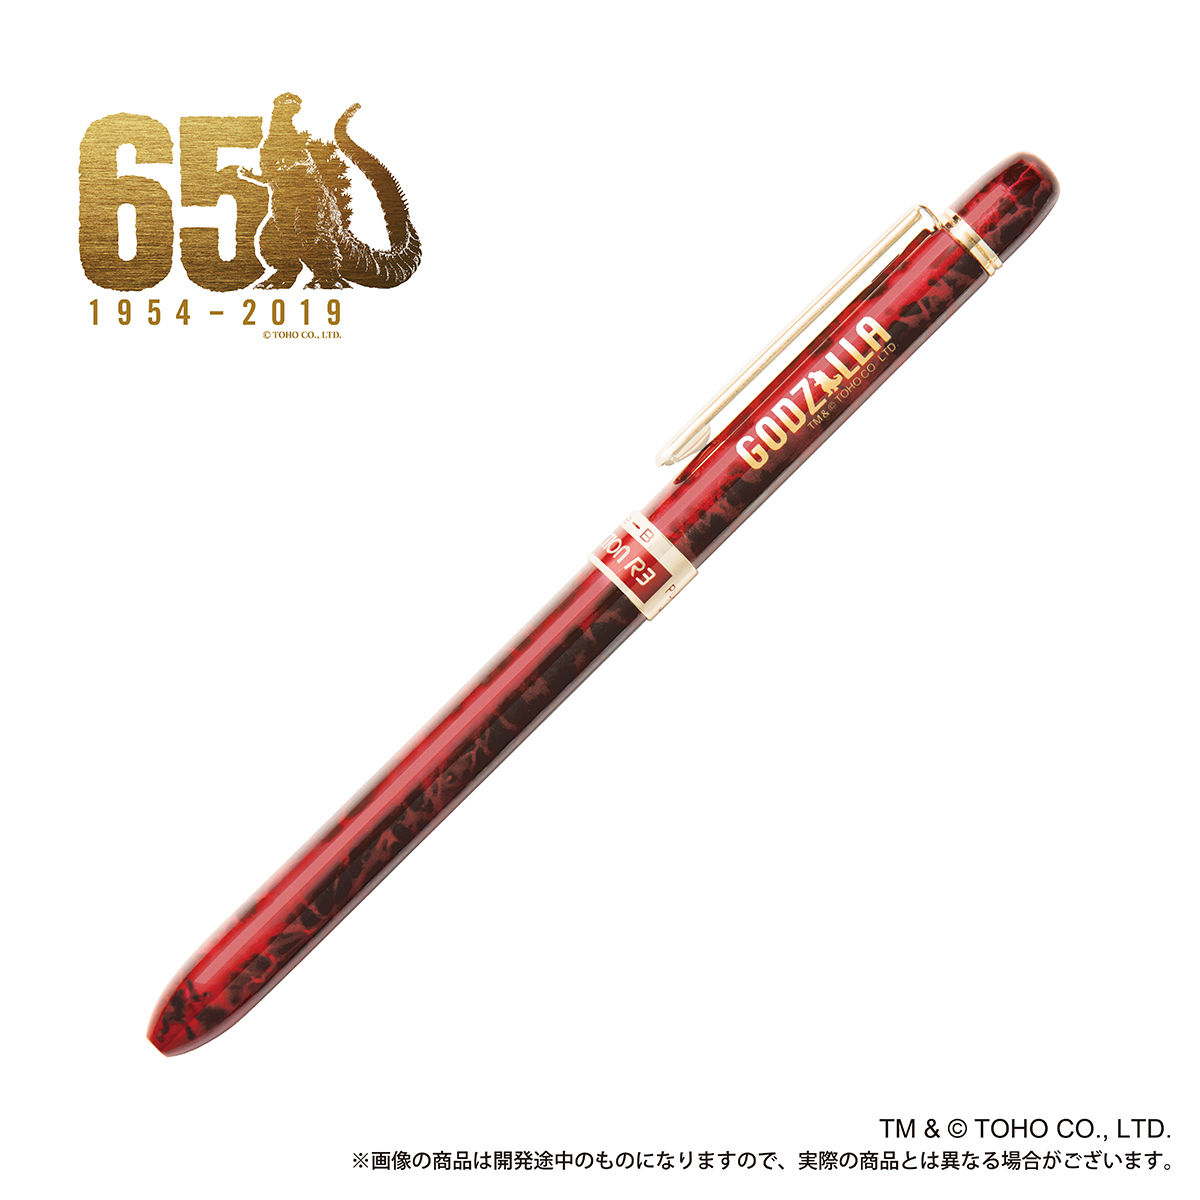 Godzilla Store Limited Godzilla vs Kong Mascot Ballpoint Pen Type A Japan NEW 